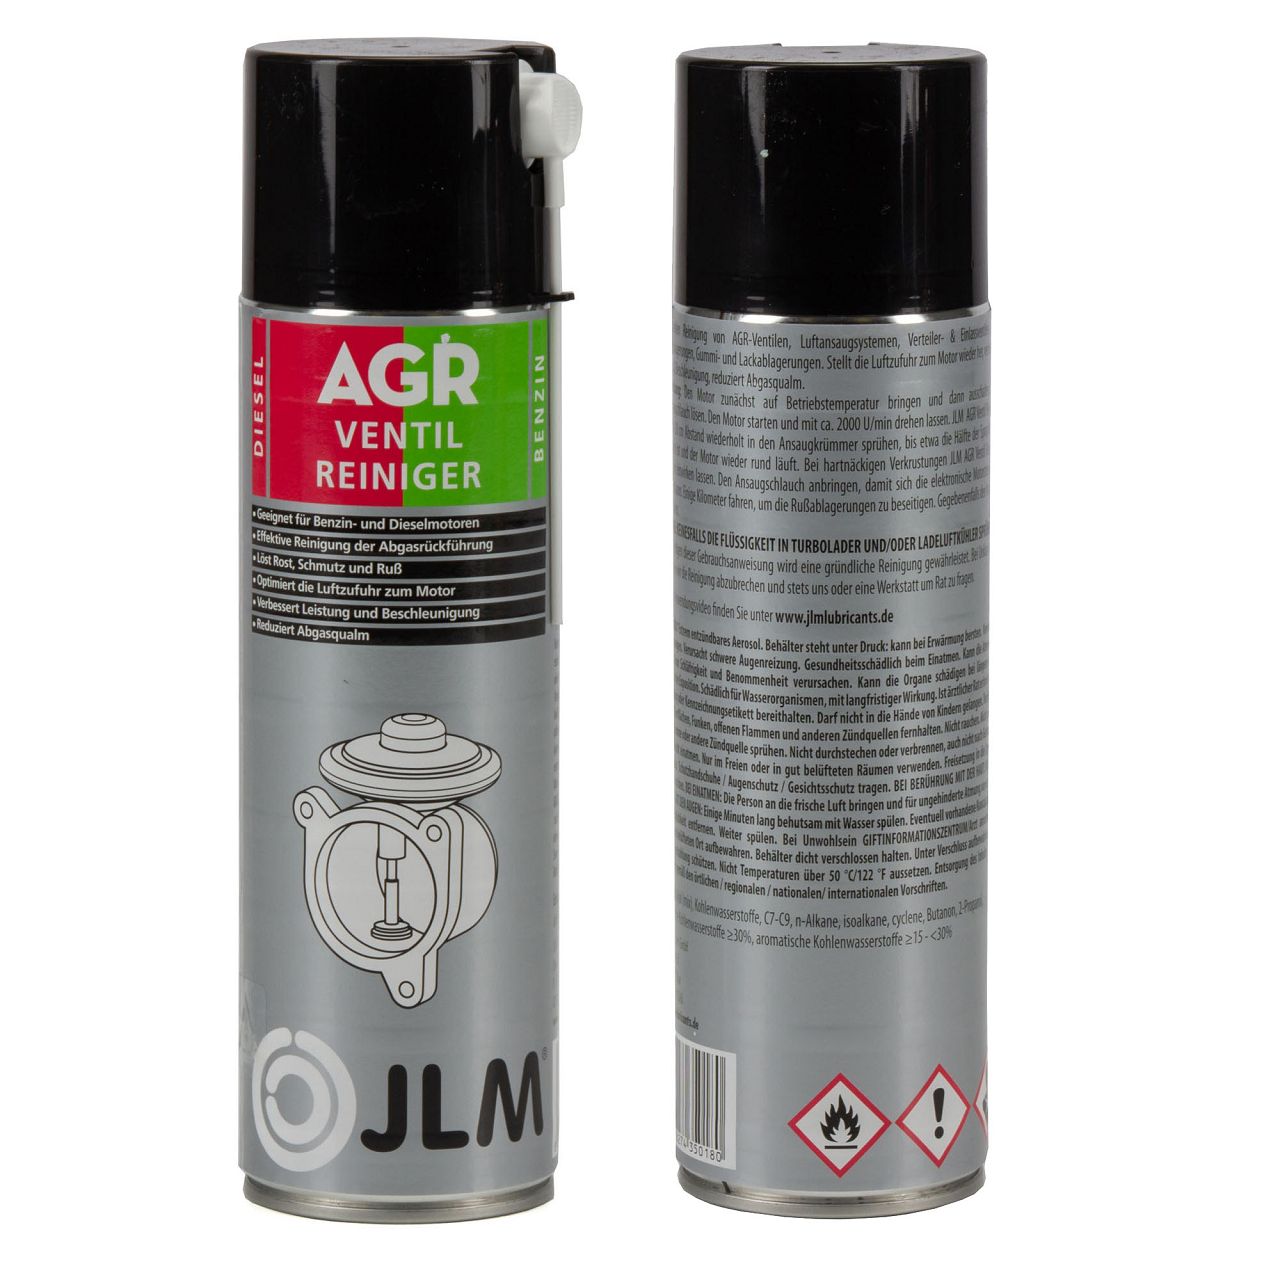 2x 500ml JLM J02712 AGR-Ventil Reiniger Drosselklappenreiniger